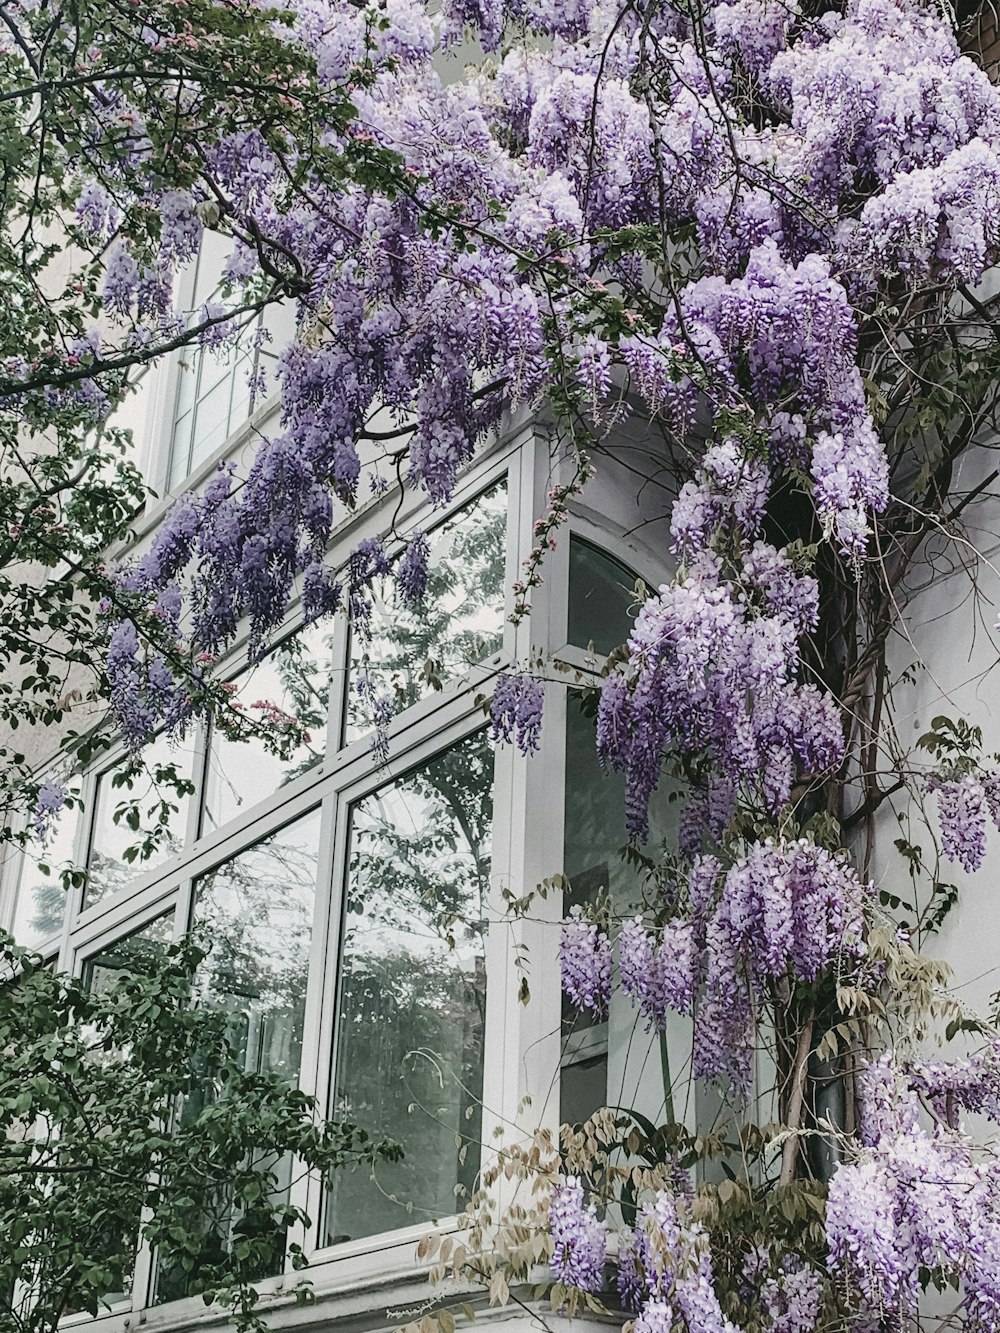 ガラス窓の近くの薄紫色の低木